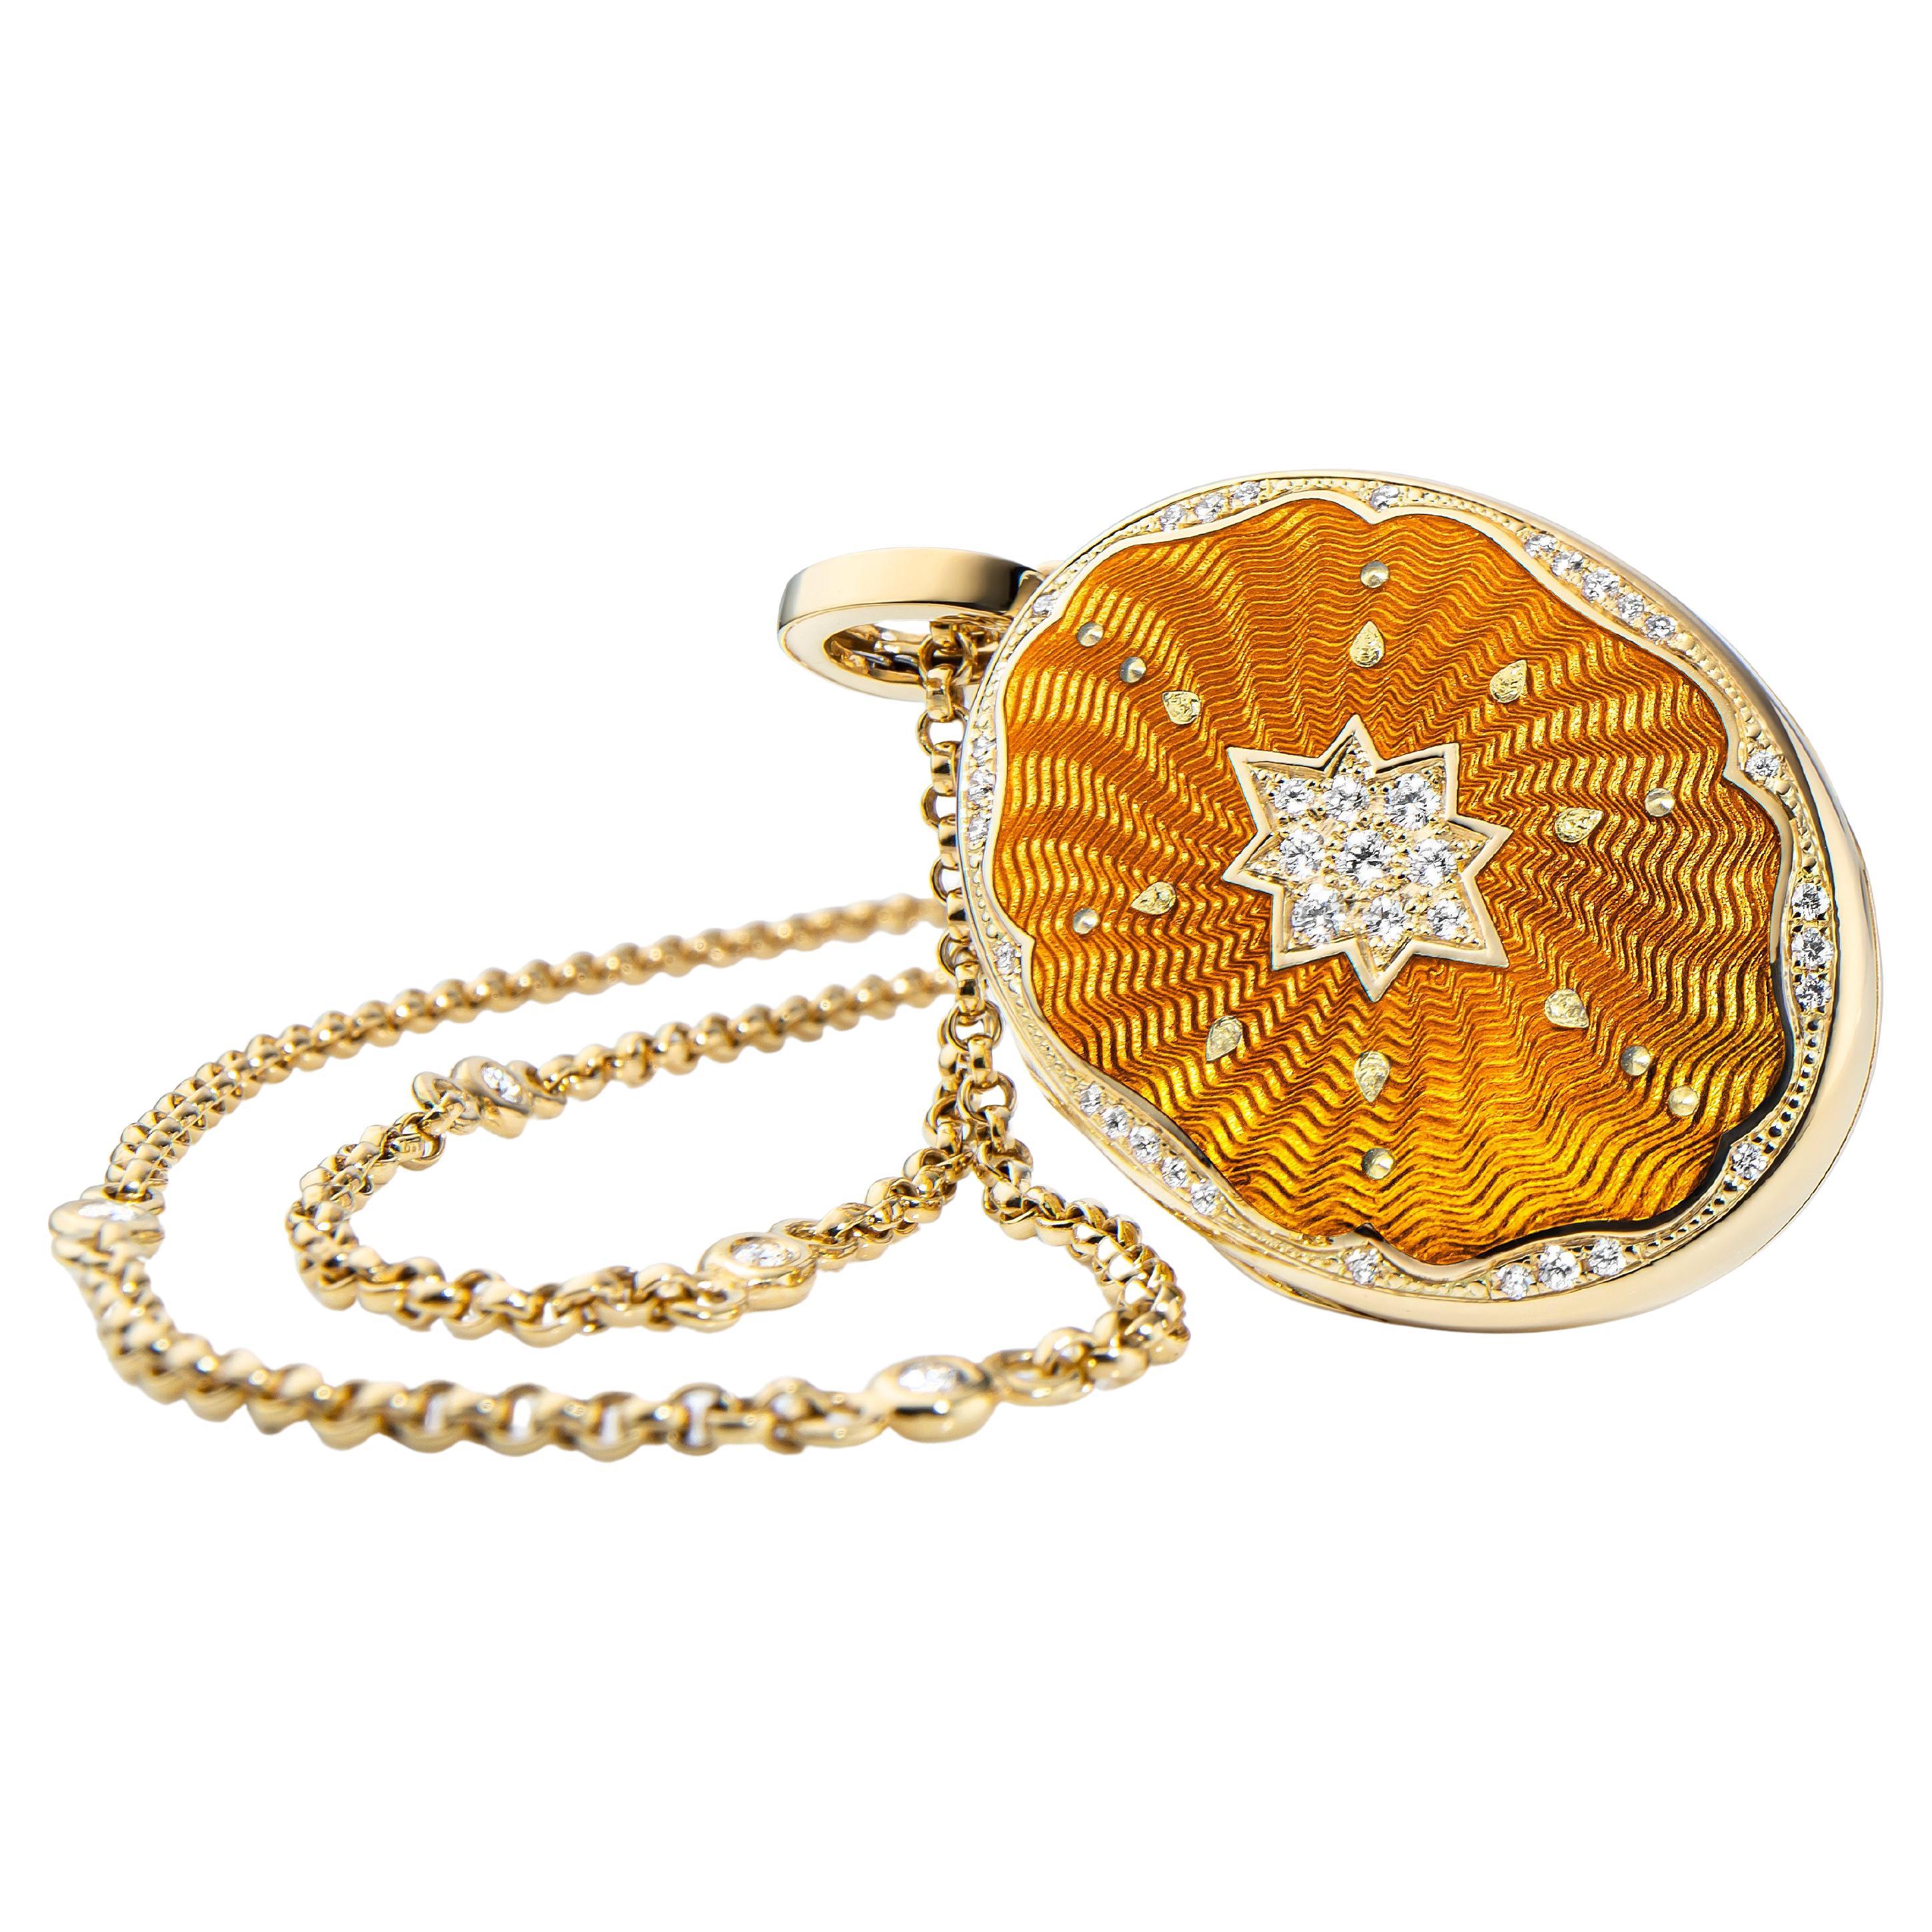 Ovales Medaillon-Anhänger-Halskette aus 18 Karat Gelbgold mit gelber Emaille und 37 Diamanten 0,29 Karat